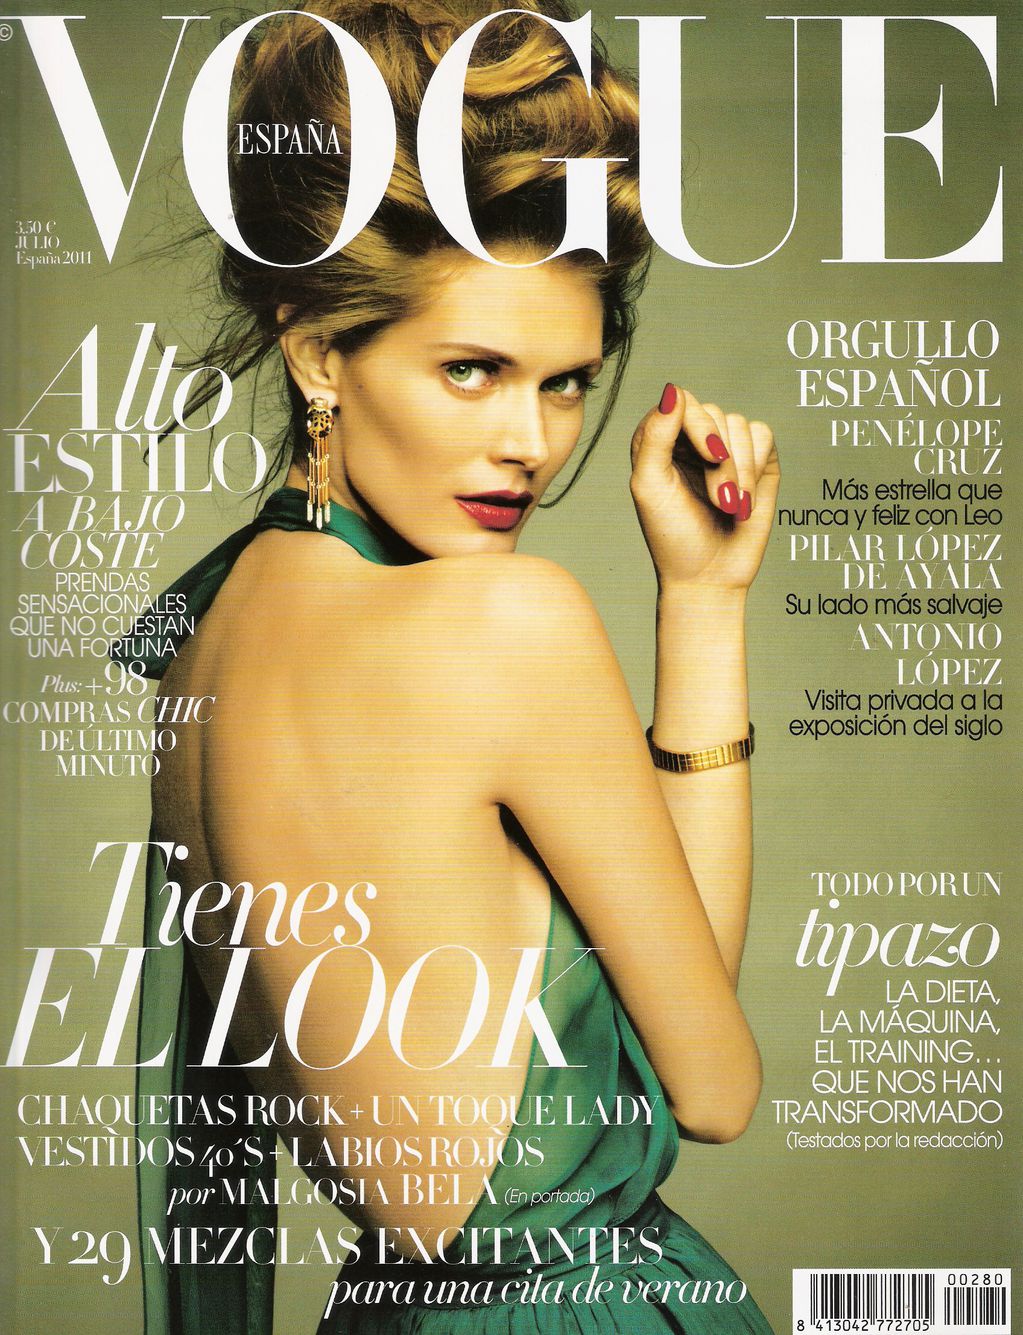 Обложки Vogue за Июль (фото 4)